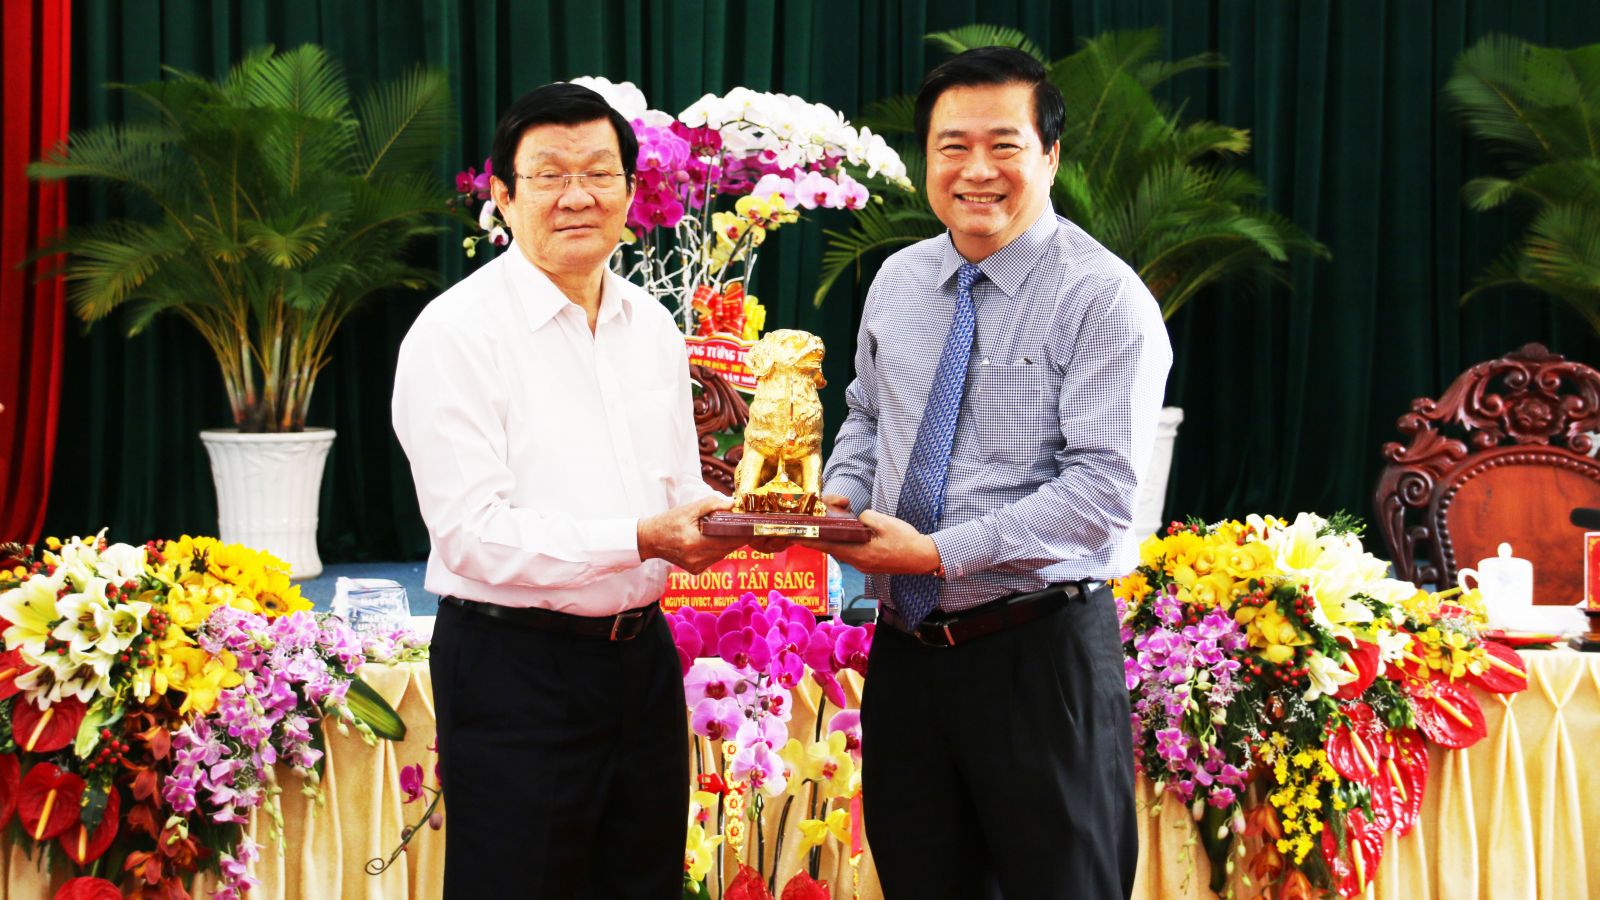 Bí thư Tỉnh ủy, Chủ tịch HĐND tỉnh – Phạm Văn Rạnh tặng quà chúc mừng năm mới nguyên Chủ tịch nước Trương Tấn Sang.